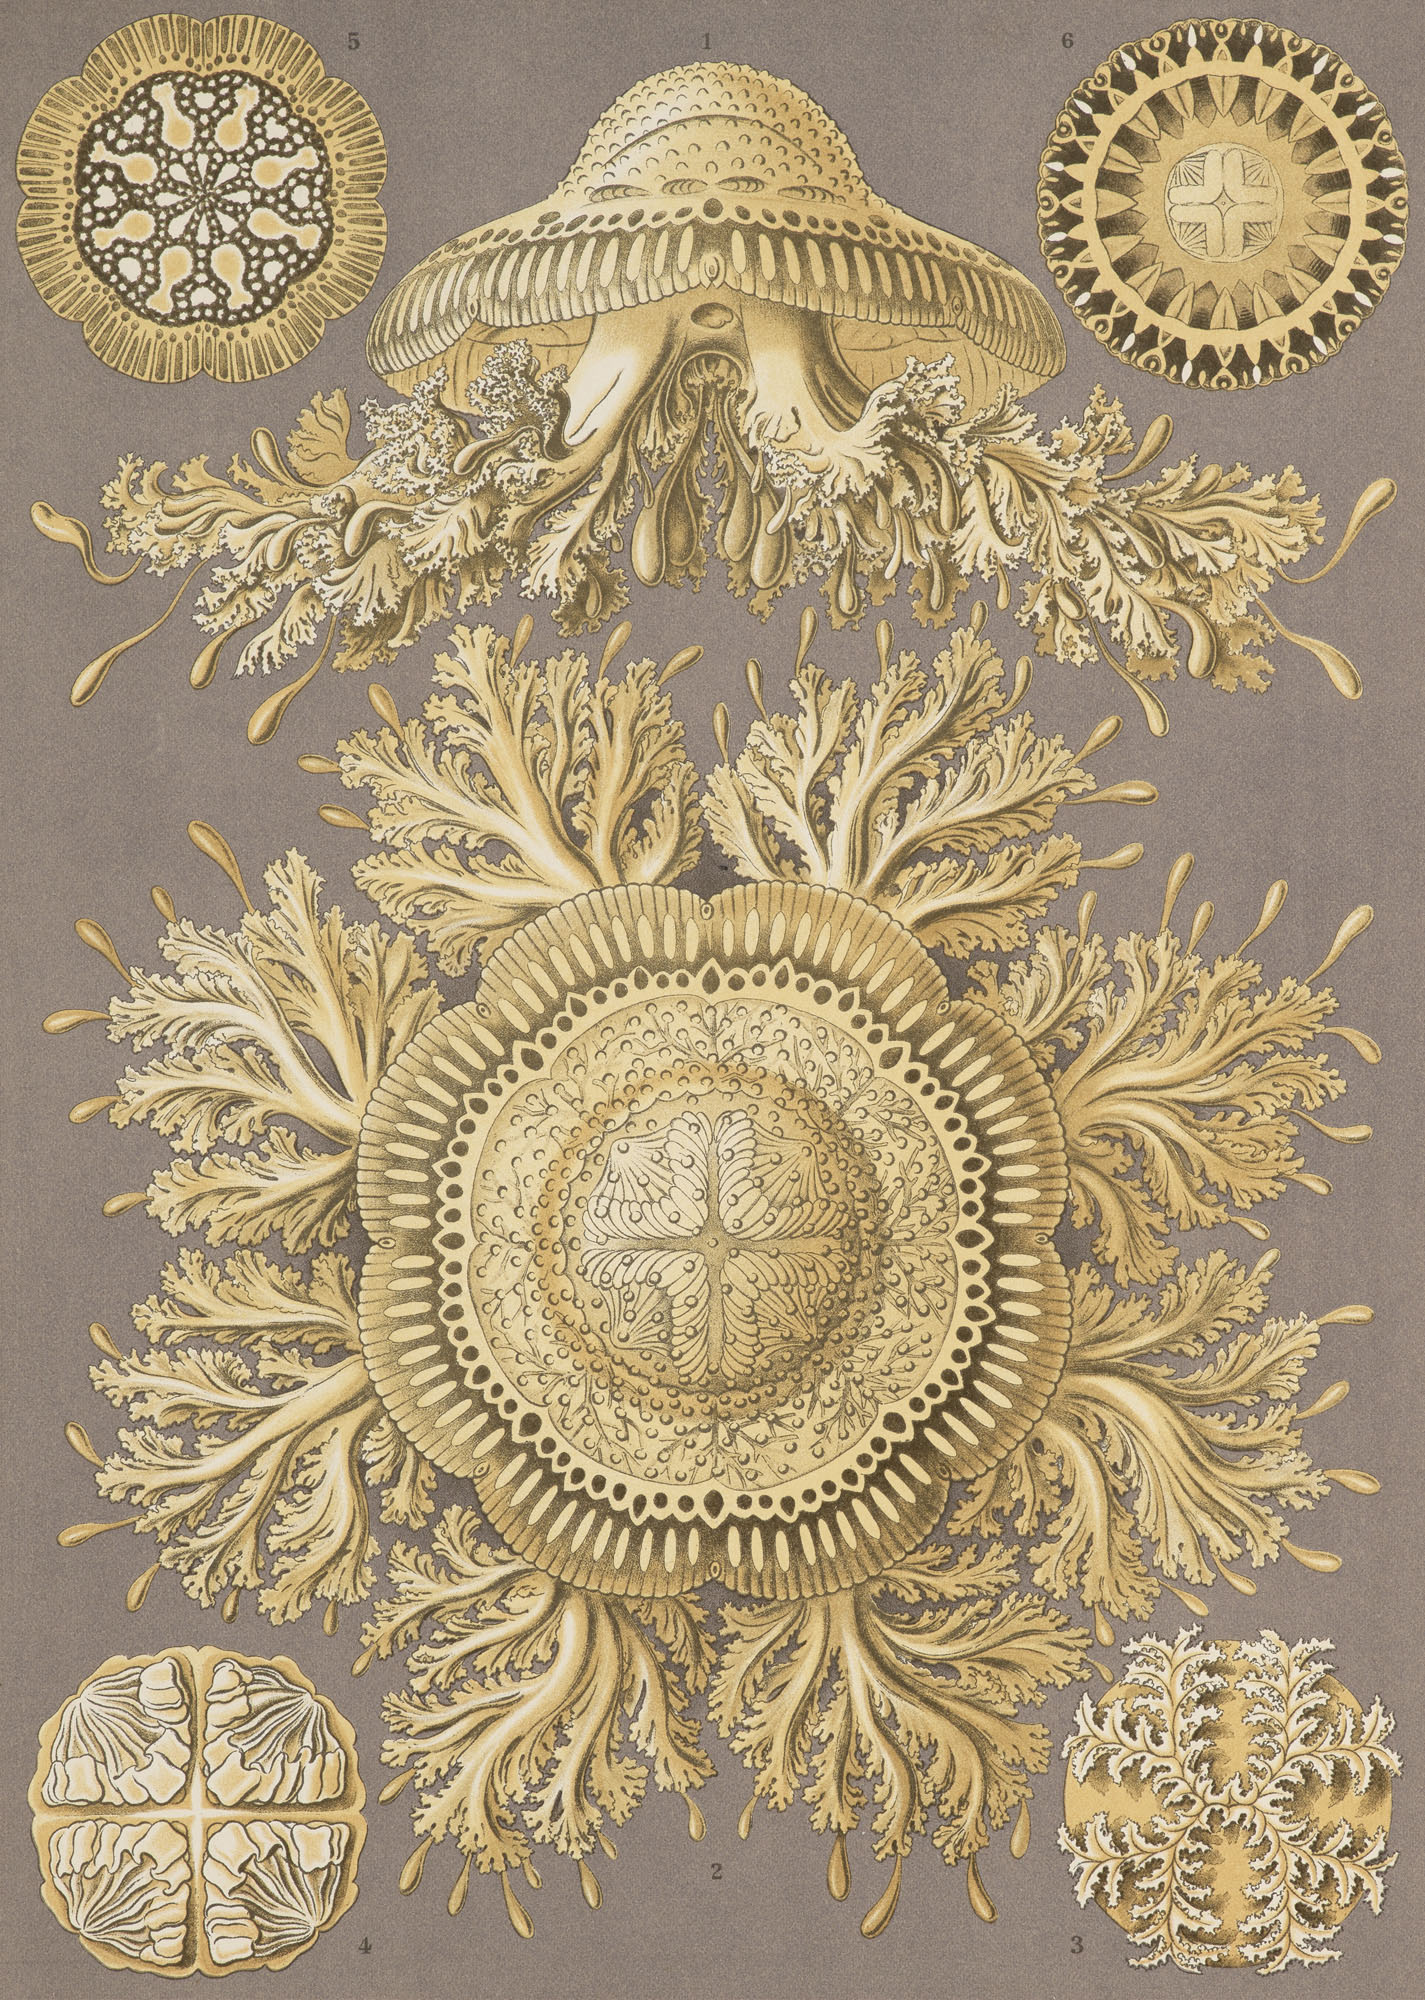 Jugendstil - - Ernst Haeckel. - Image 2 of 3